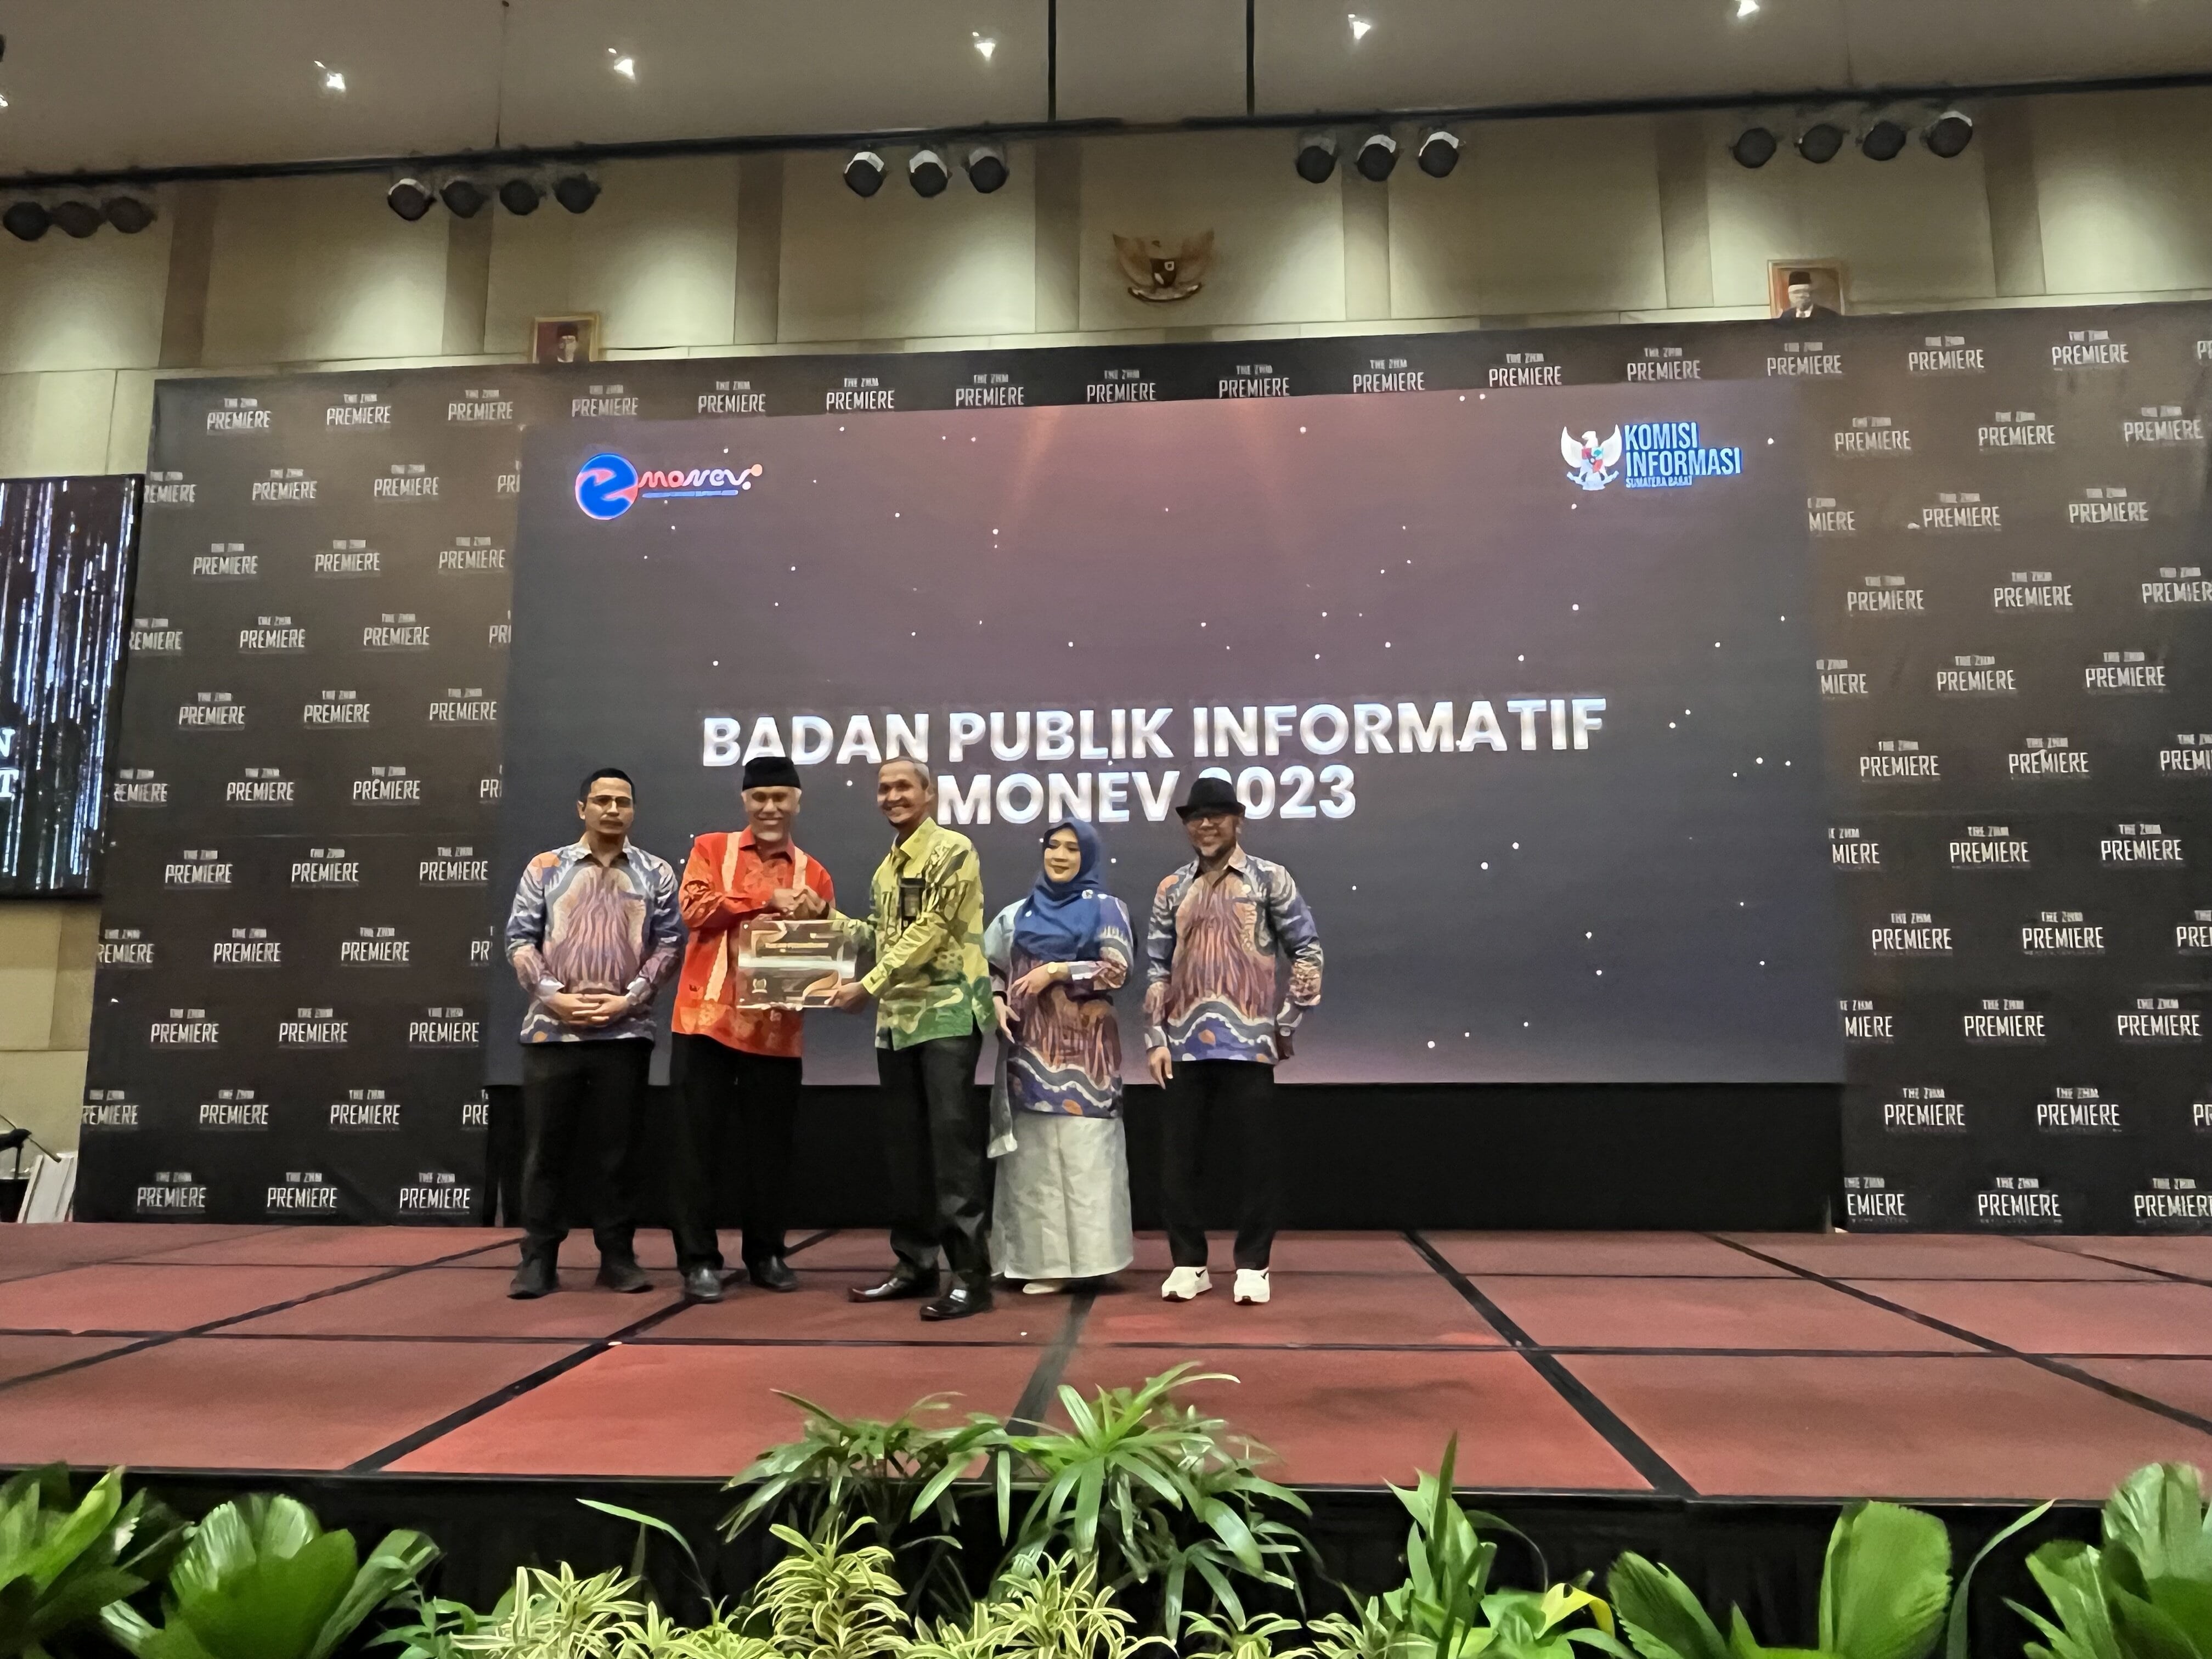 PTUN Padang meraih penghargaan Badan Publik Informatif Tahun 2023